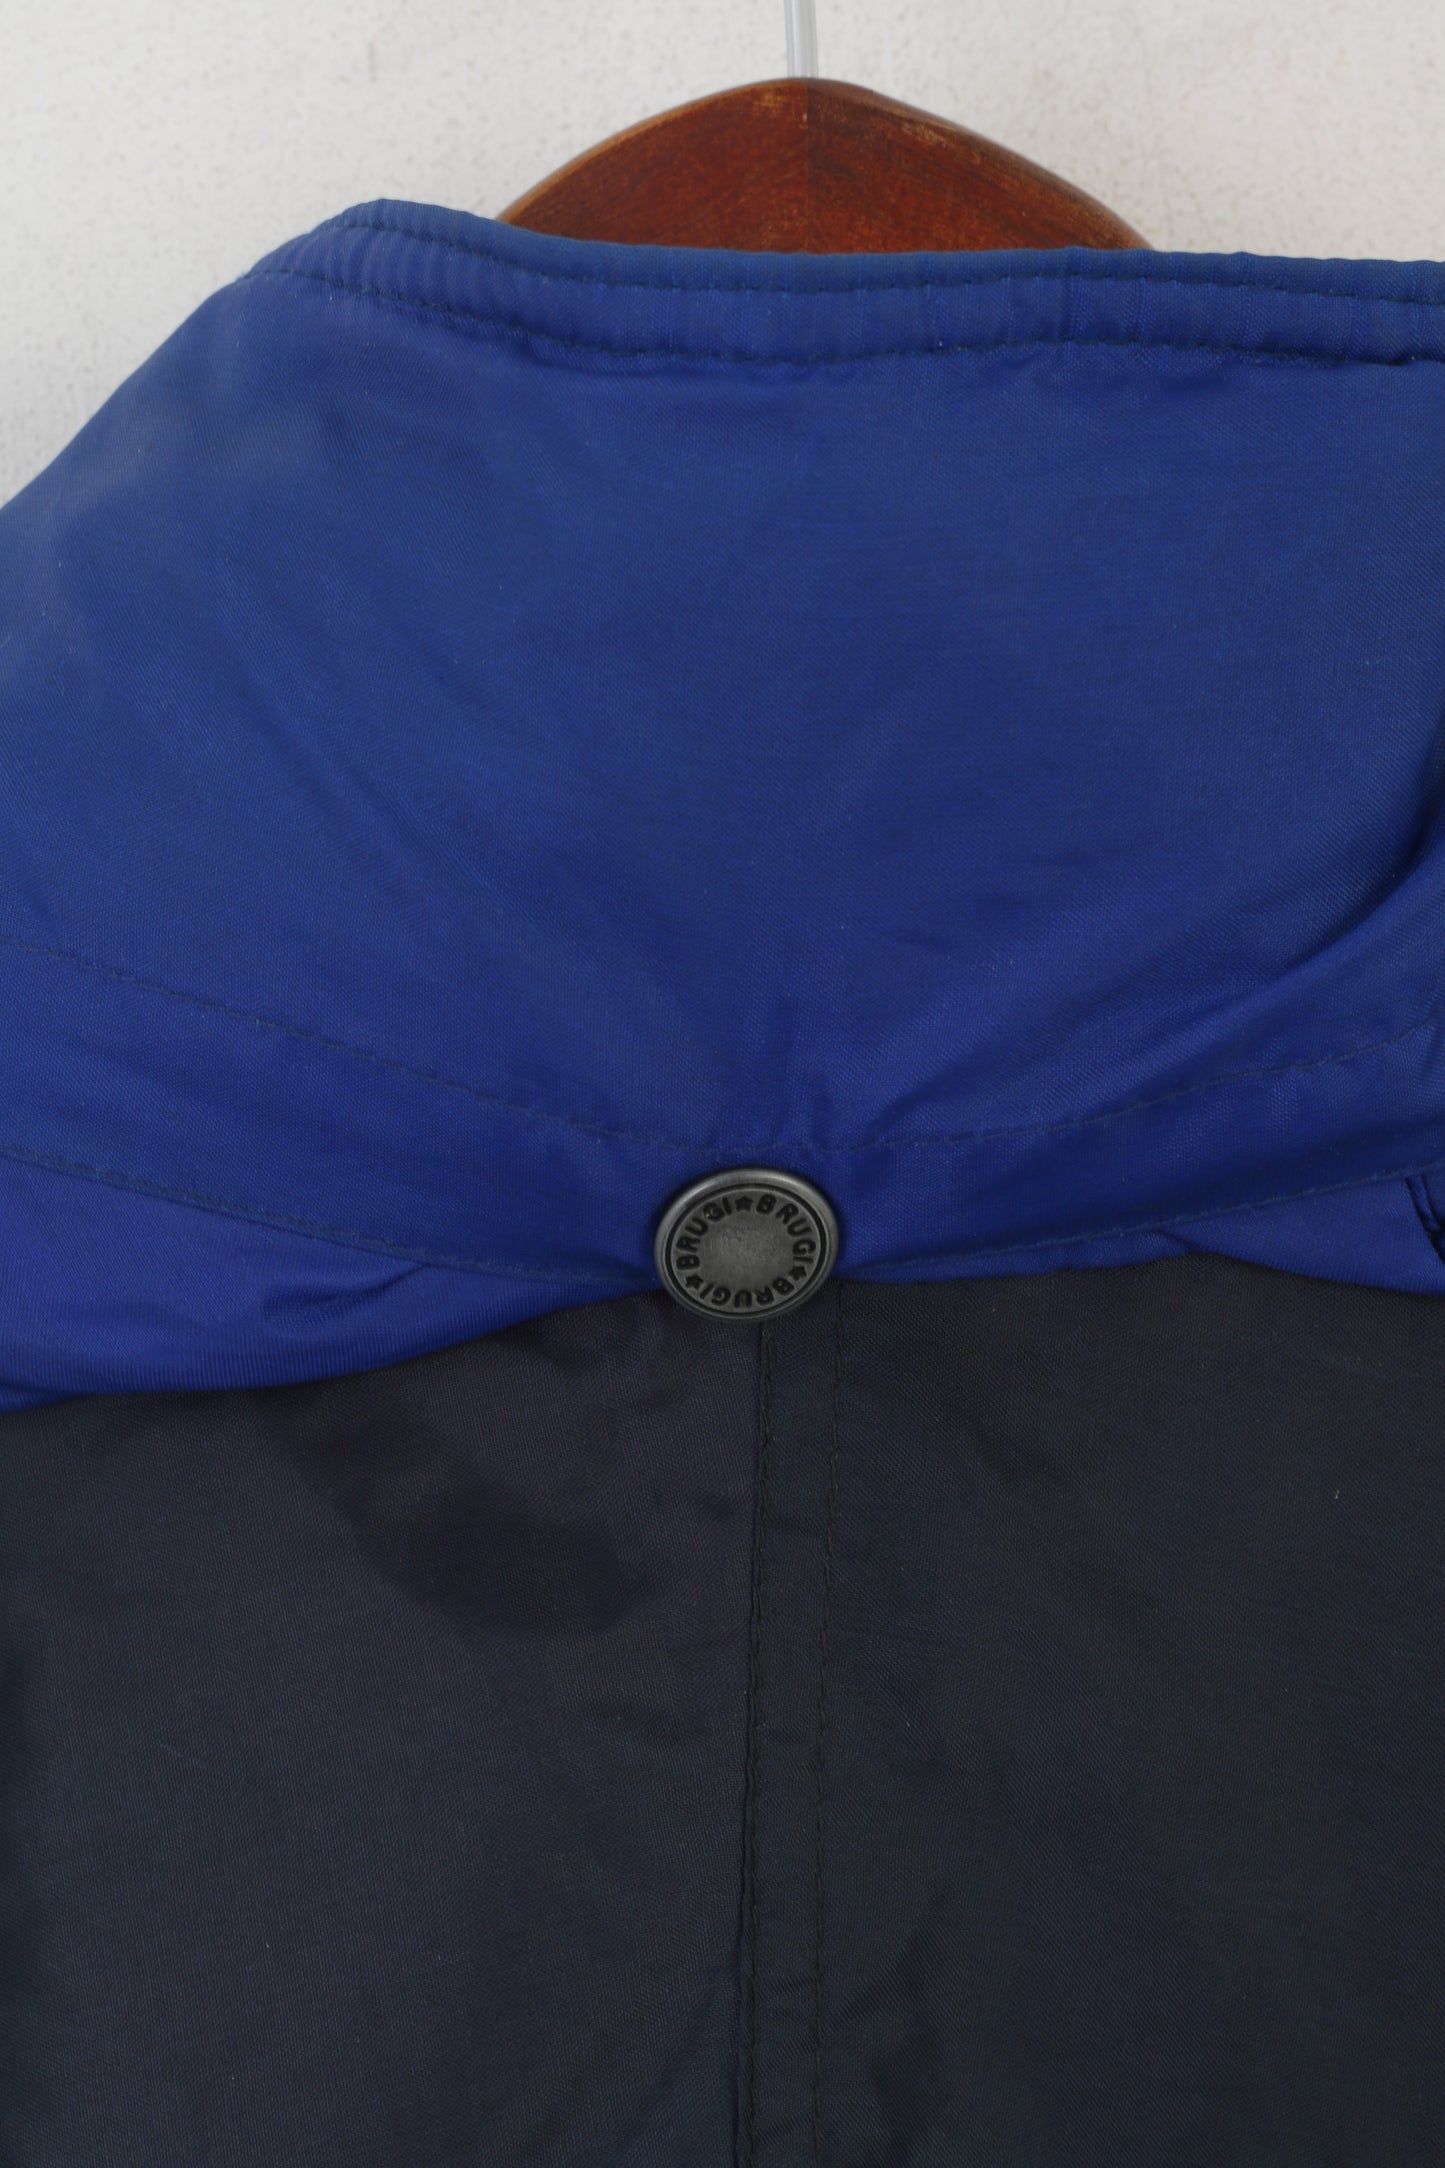 Brugi Veste pour homme en nylon bleu marine imperméable style vintage en Italie avec capuche cachée